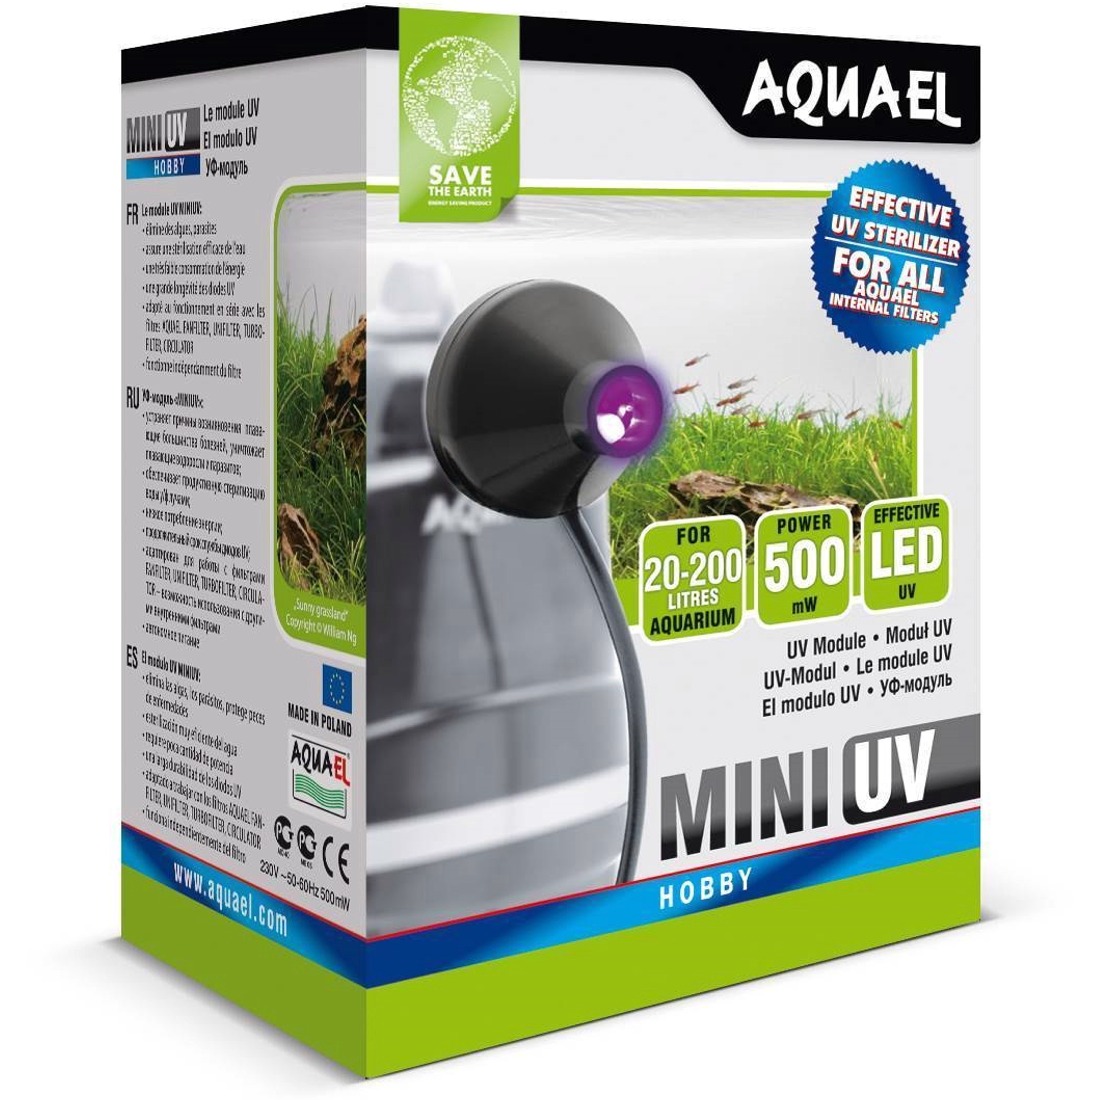 AQUAEL Mini UV LED élimine les algues et micro-organismes pathogènes dans les aquarium jusqu\'à 200L